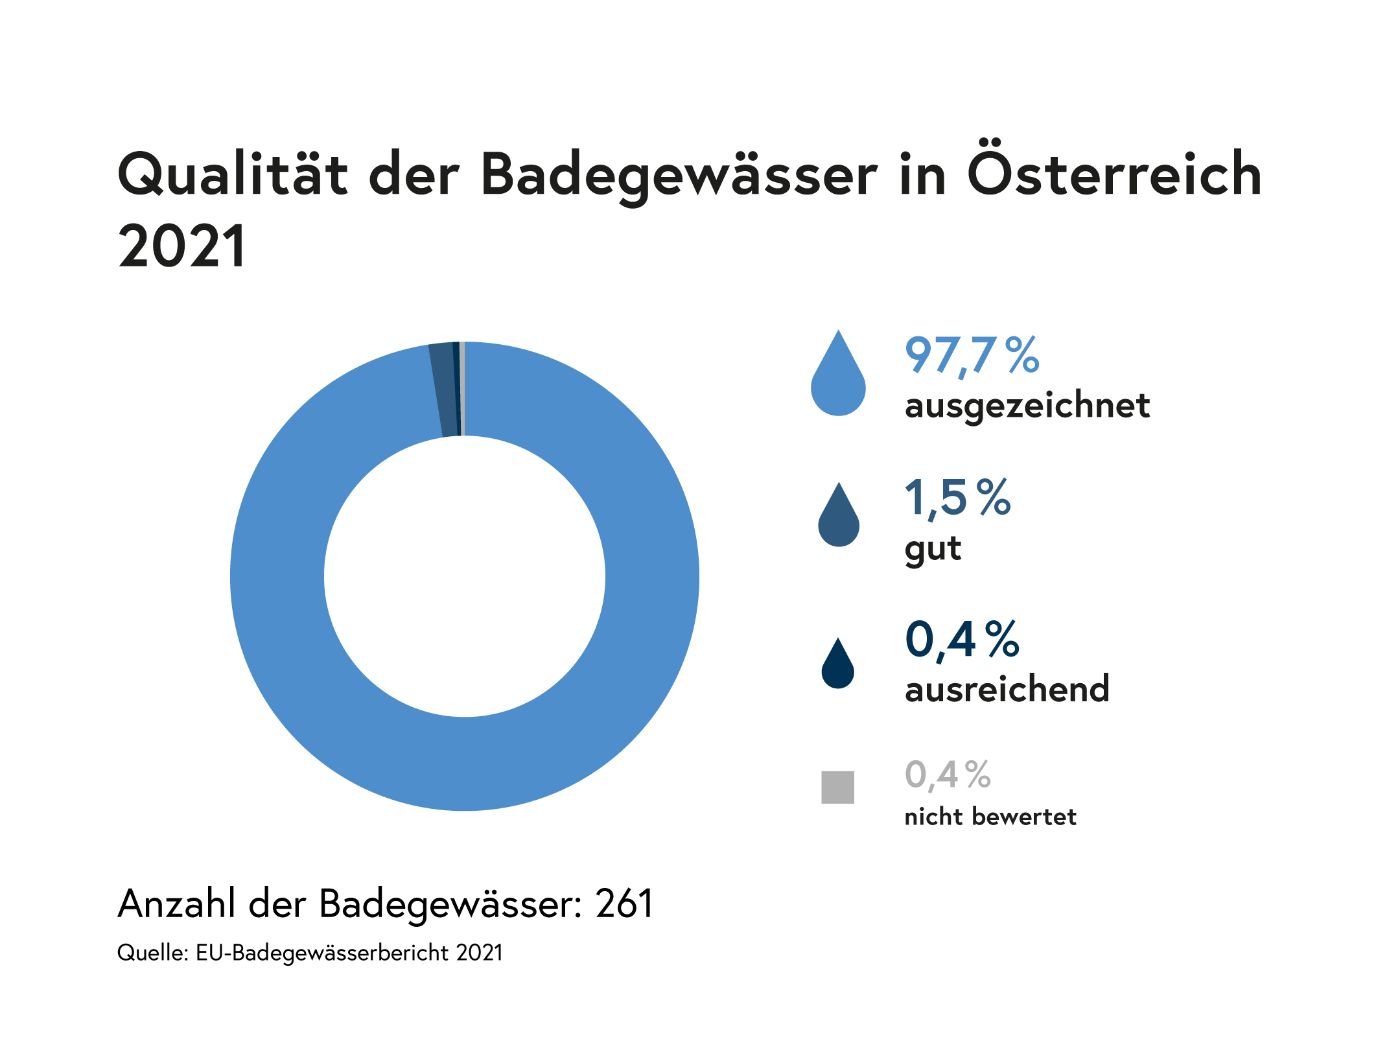 Infografik: Qualität der Badegewässer in Österreich 2021: 97,7 % ausgezeichnet, 1,5 % gut, 0,4 % ausreichend, 0,4 % nicht bewertet. Anzahl der Badegewässer 261. Quelle: EU-Badegewässerbericht 2021.